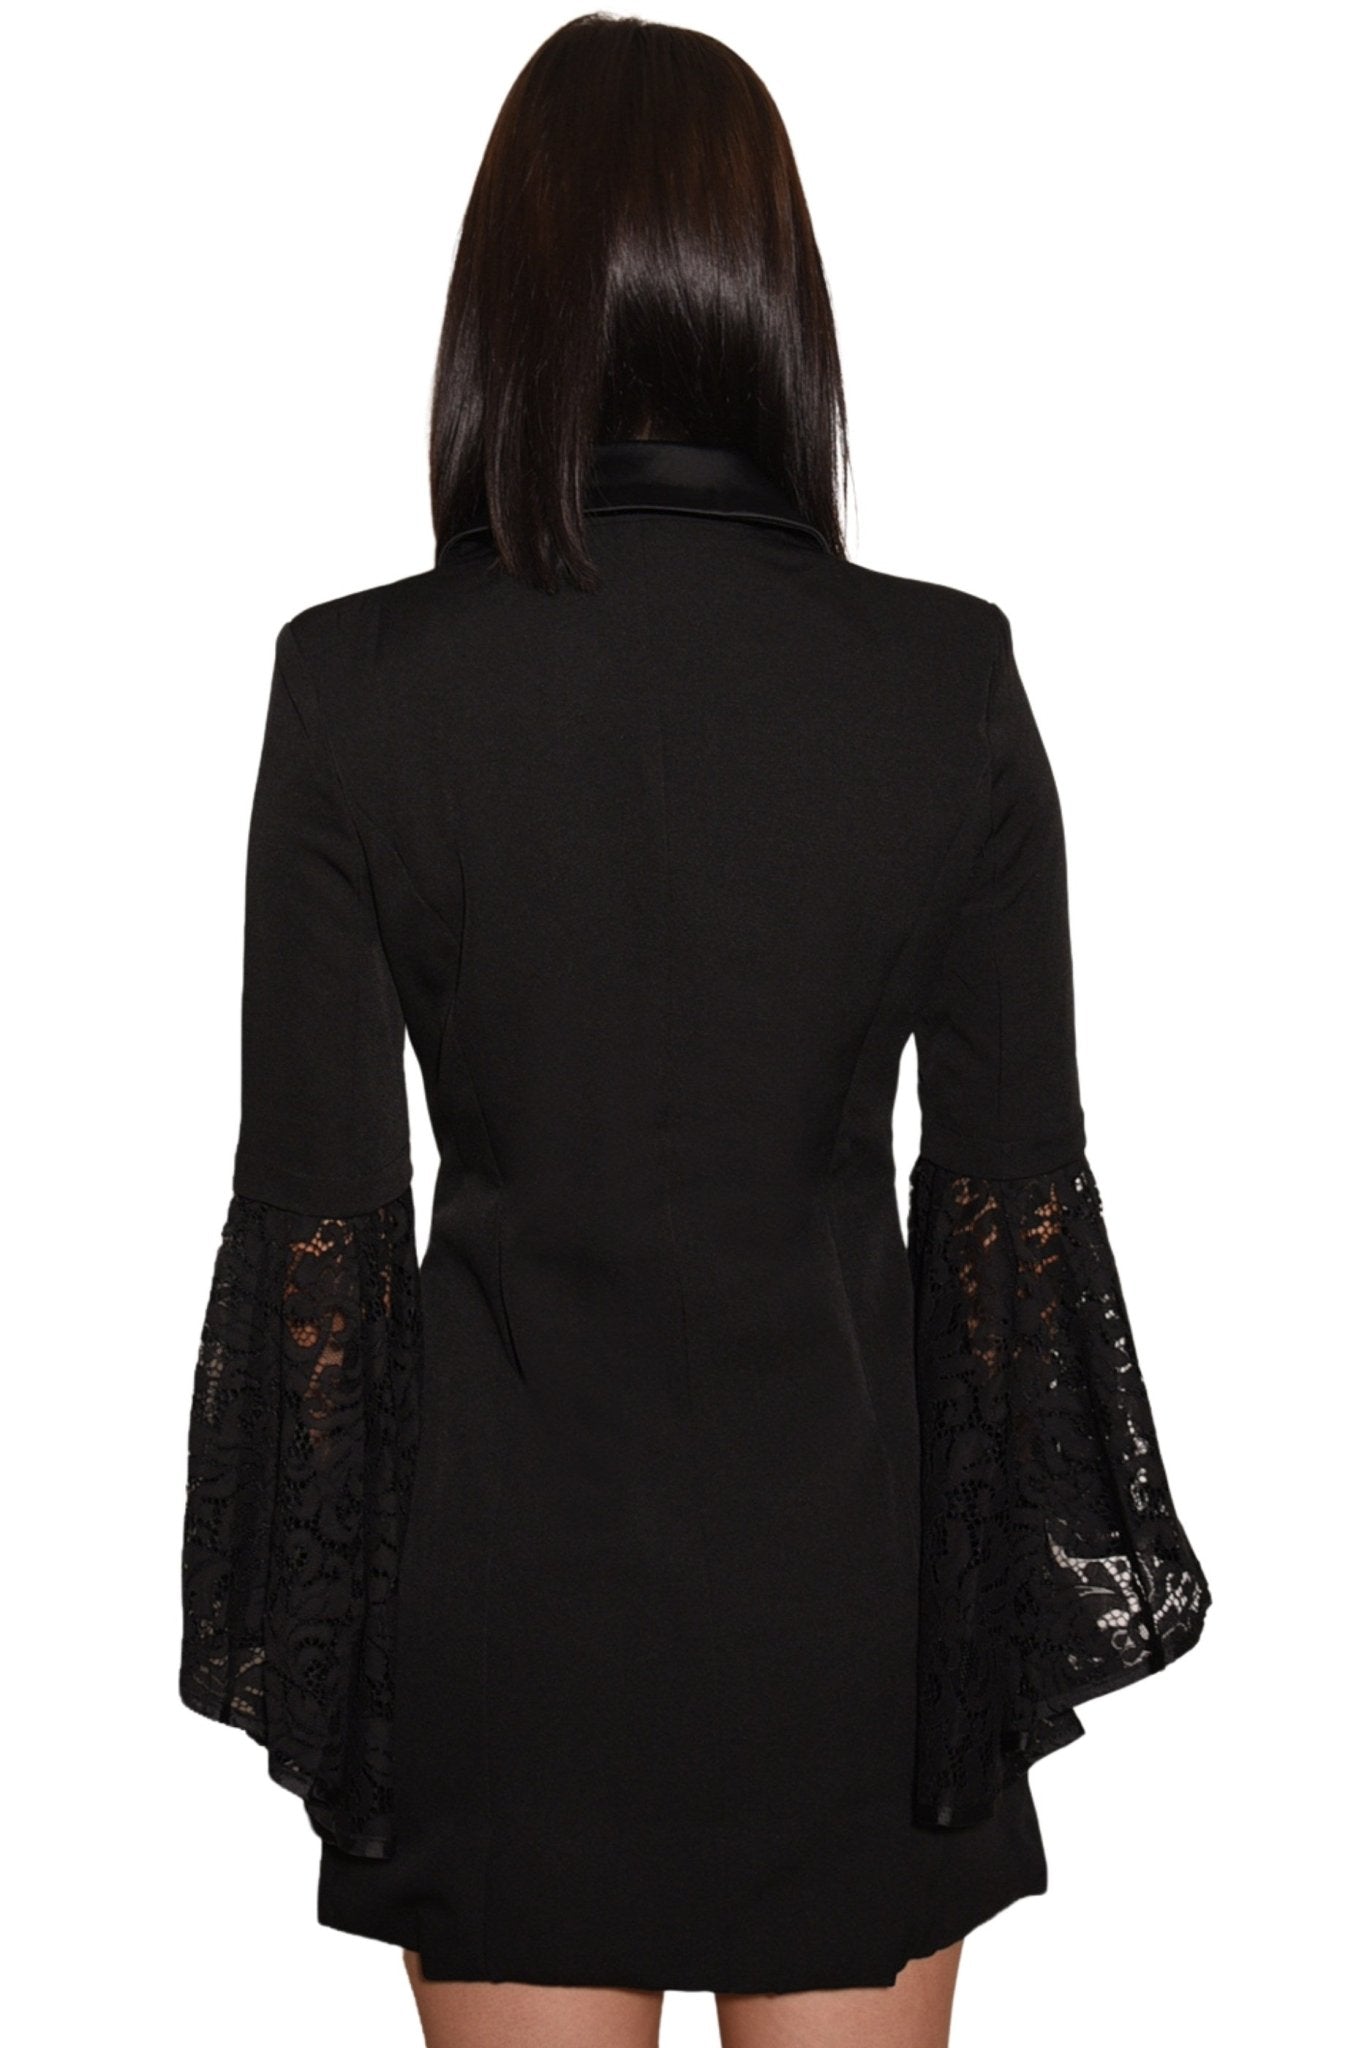 Marie Blazer Dress with Lace Sleeve Black - Akalia